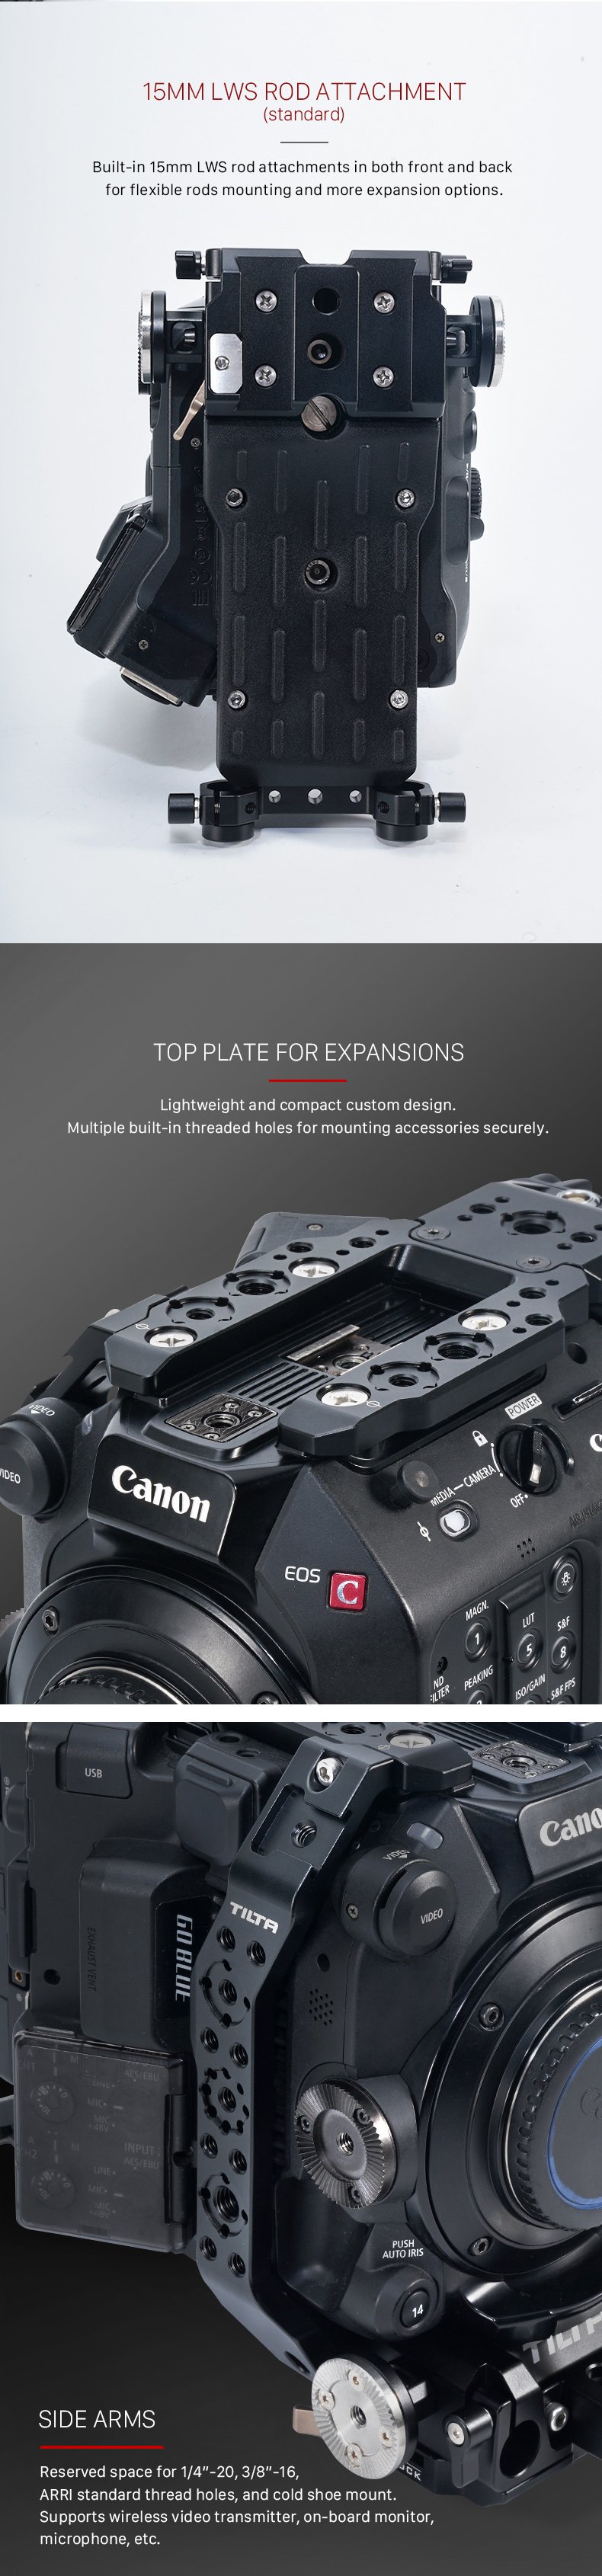 Canon C500 Mk II/C300 Mk III